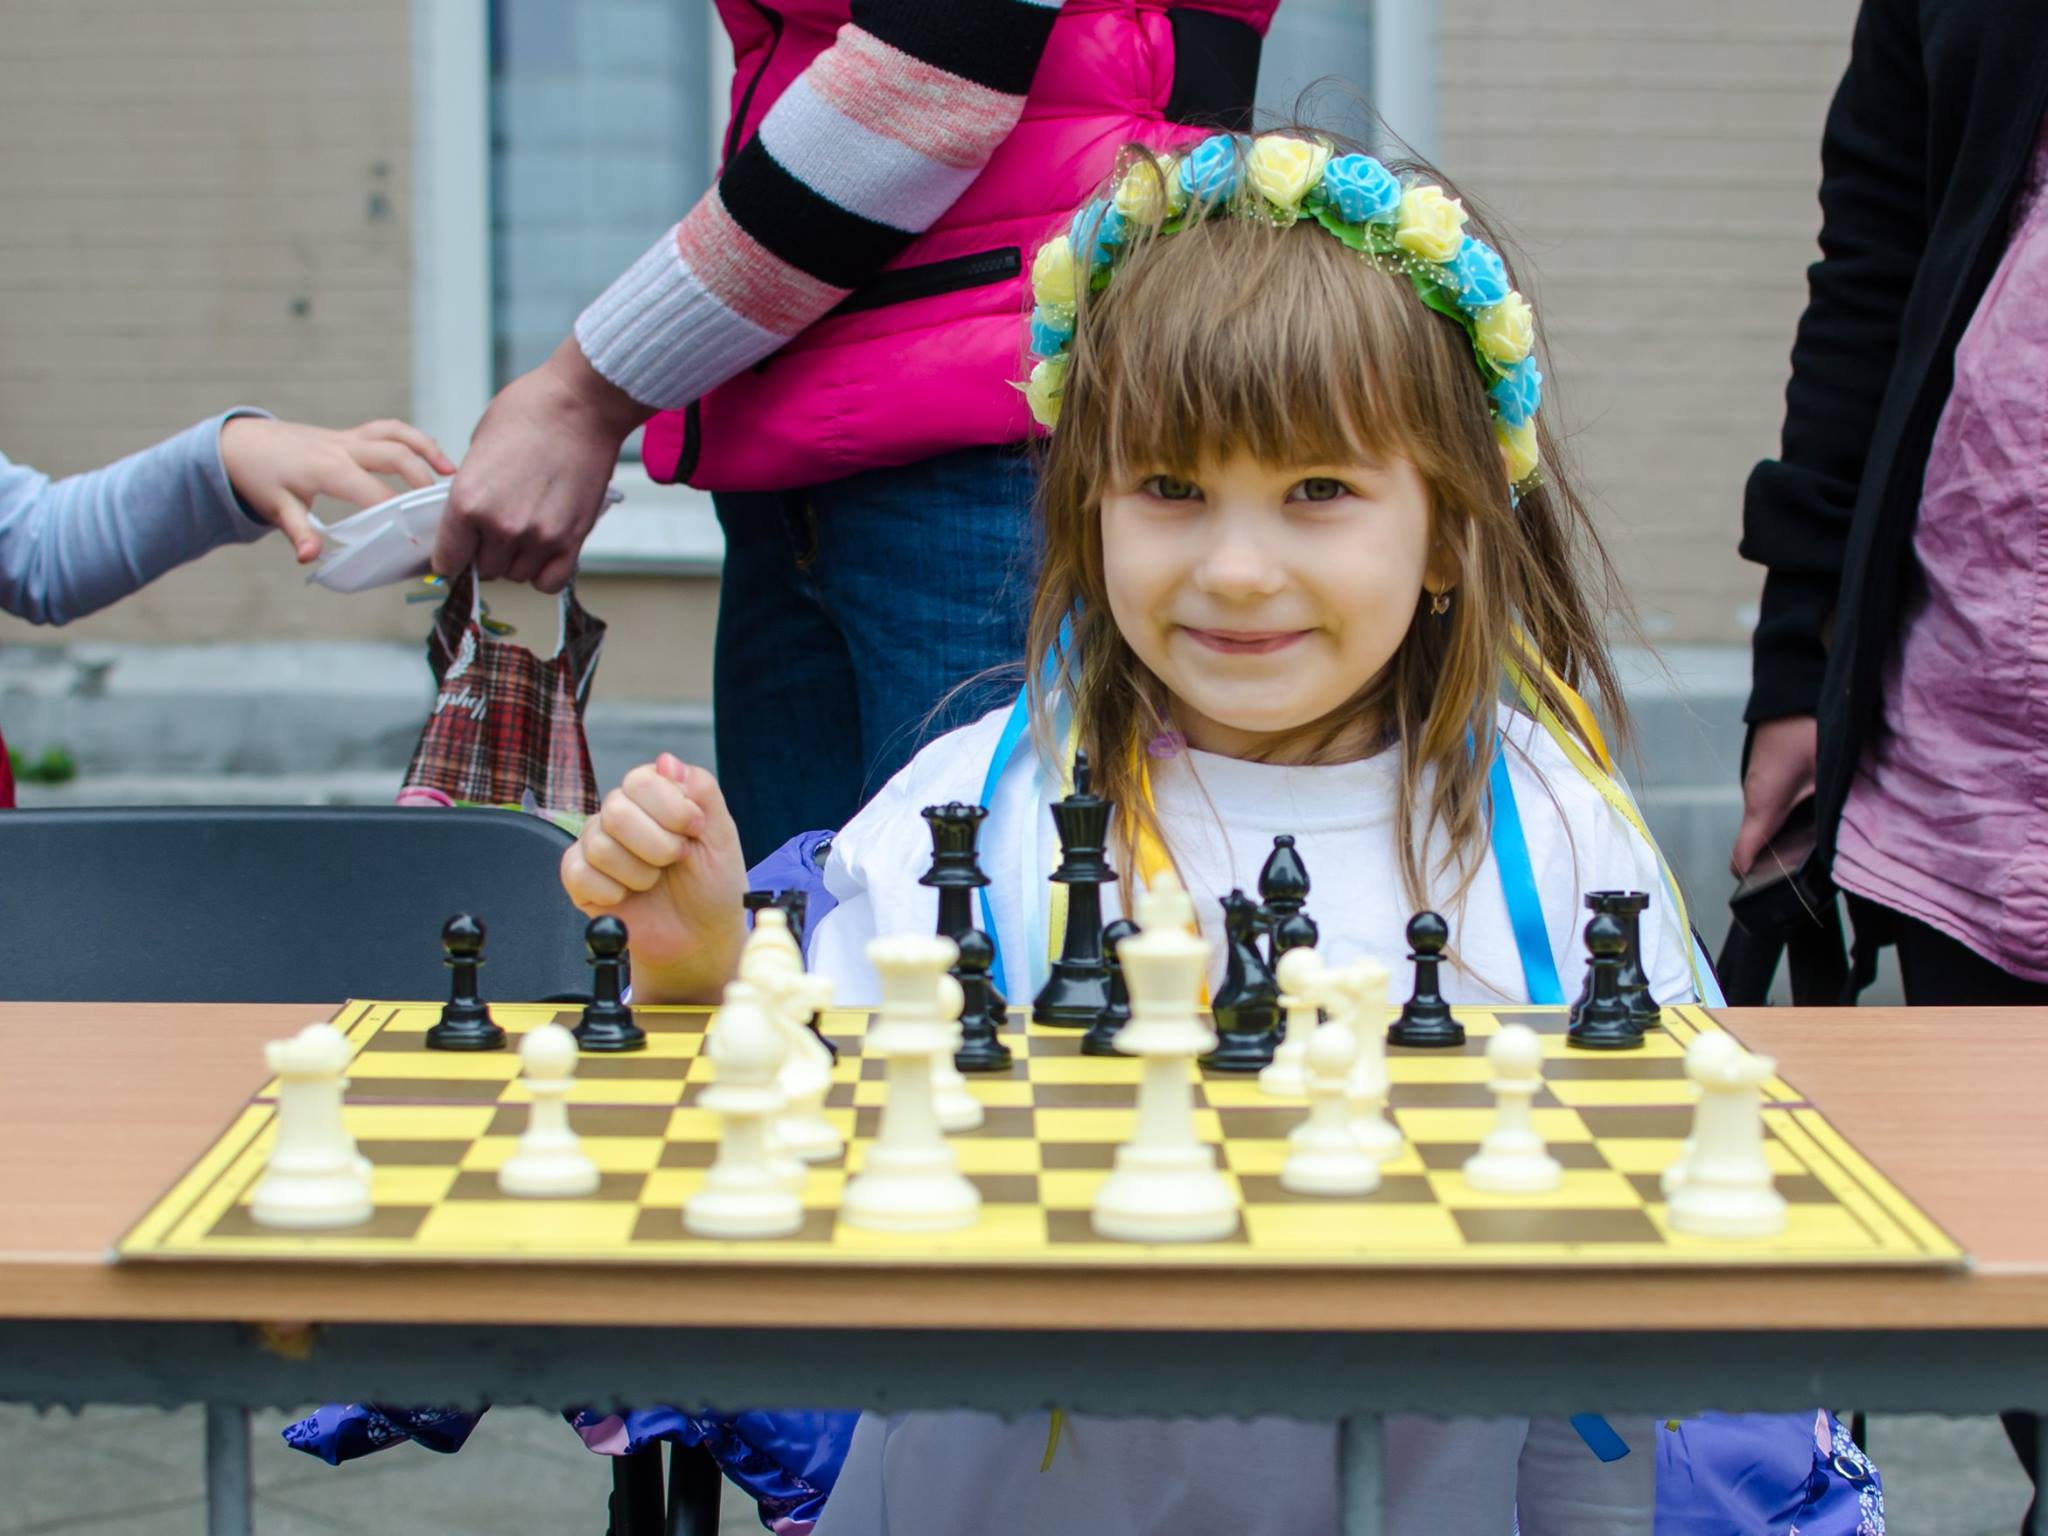 У Житомирі відбувся ІІI Шаховий фестиваль «Незалежність-2017»